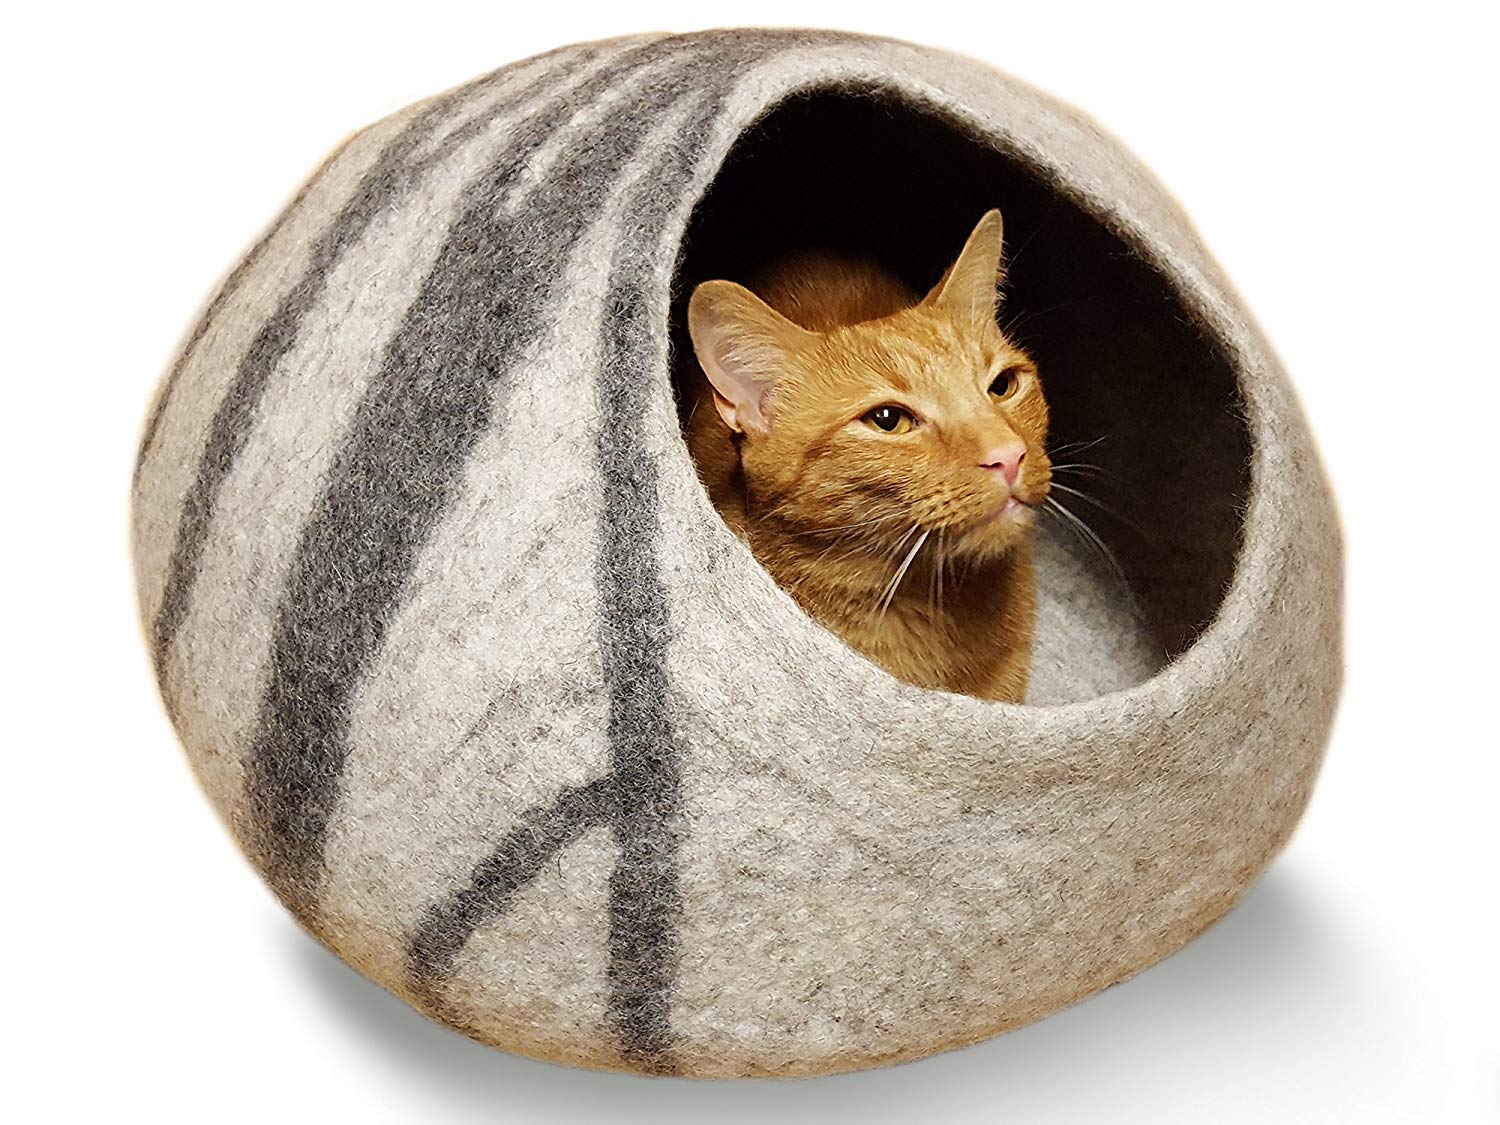 best luxury cat beds, luxury cat beds, luxury pet beds, luxury beds for cats, luxury kitten beds, luxury cat condo, cat condo, cat beds, best cat beds